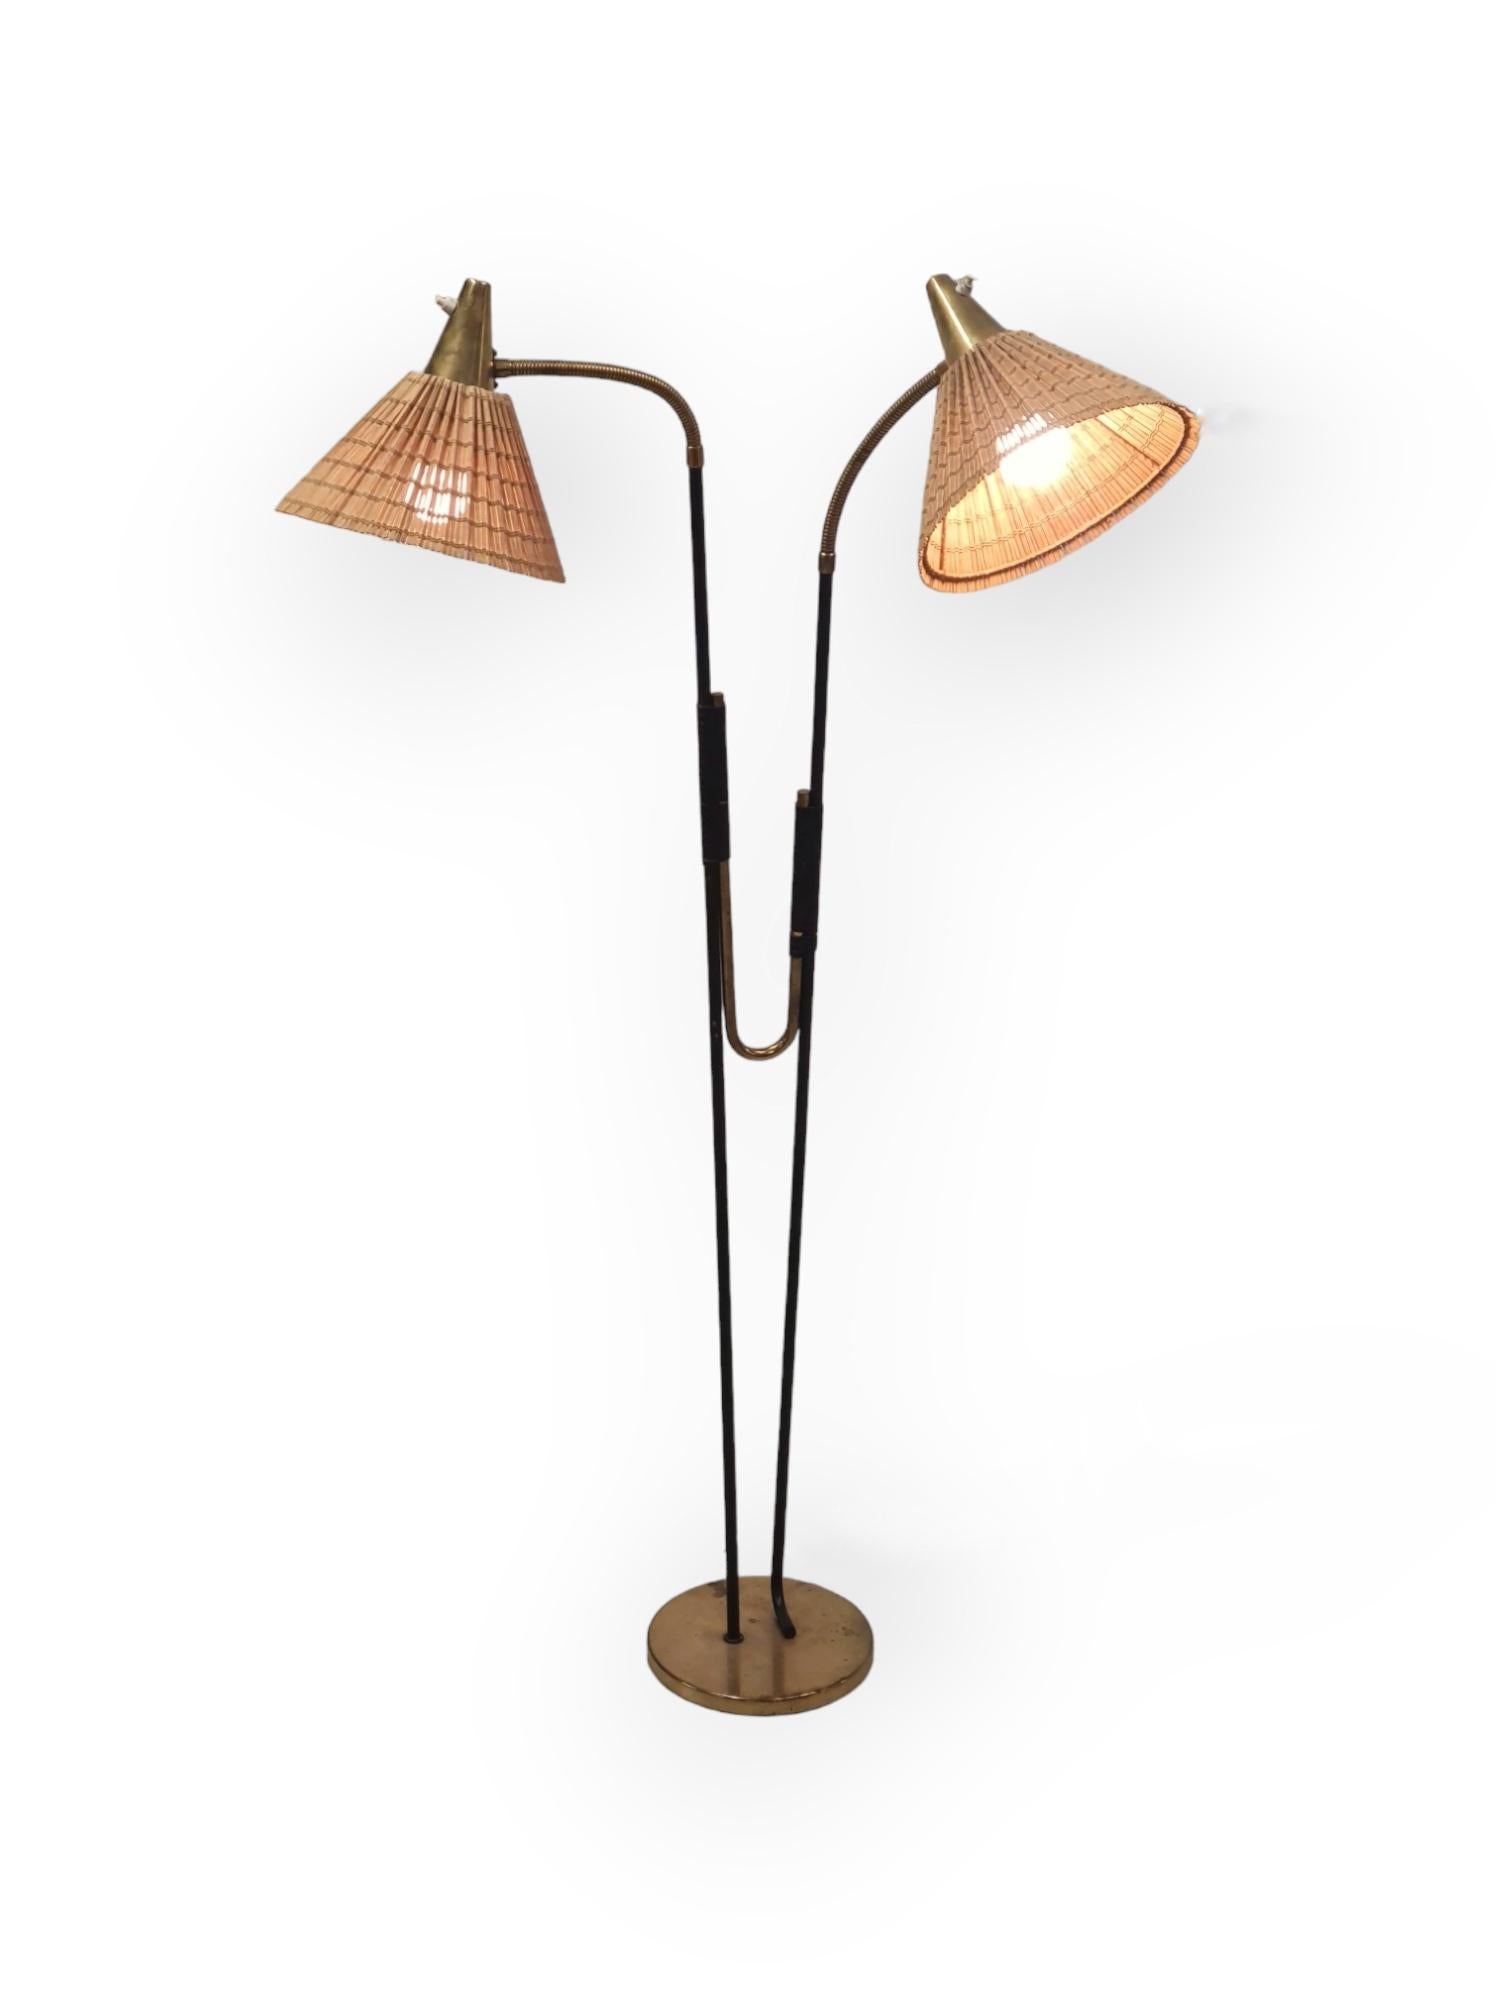 Itsu Floor Lamp Model No. EN 31, 1950s For Sale 7